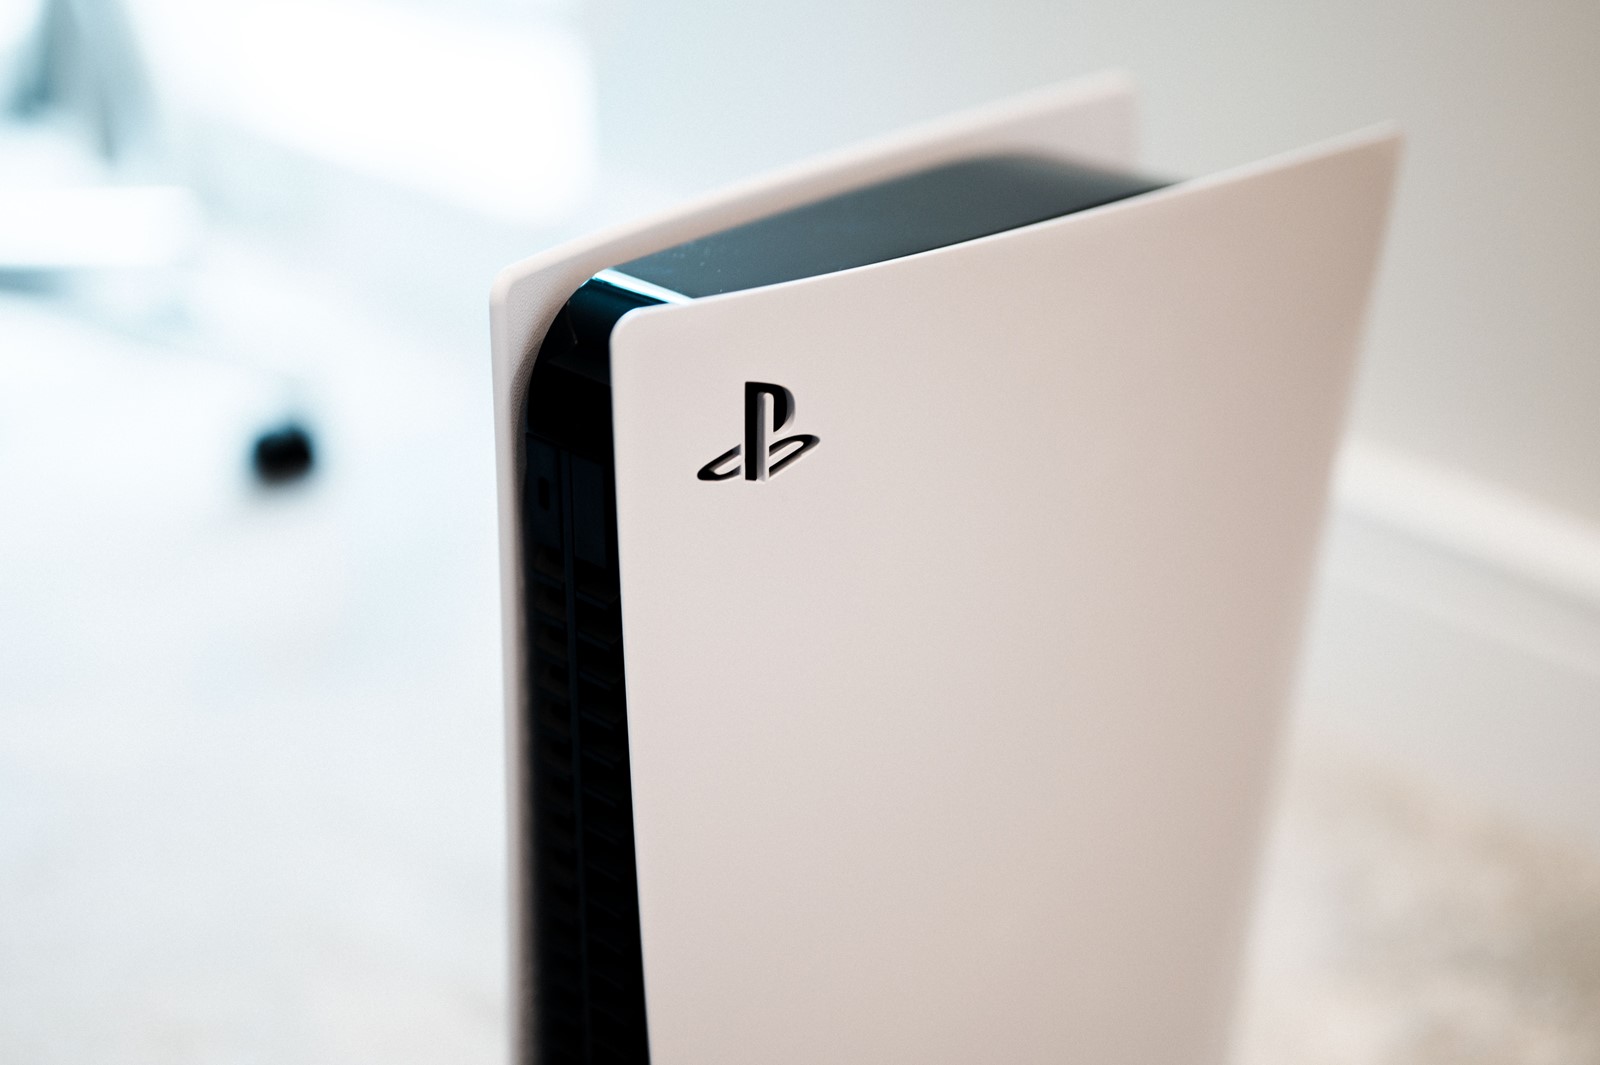 PlayStation 5 Slim procurio na fotografiji - Igraće konzole @ Bug.hr